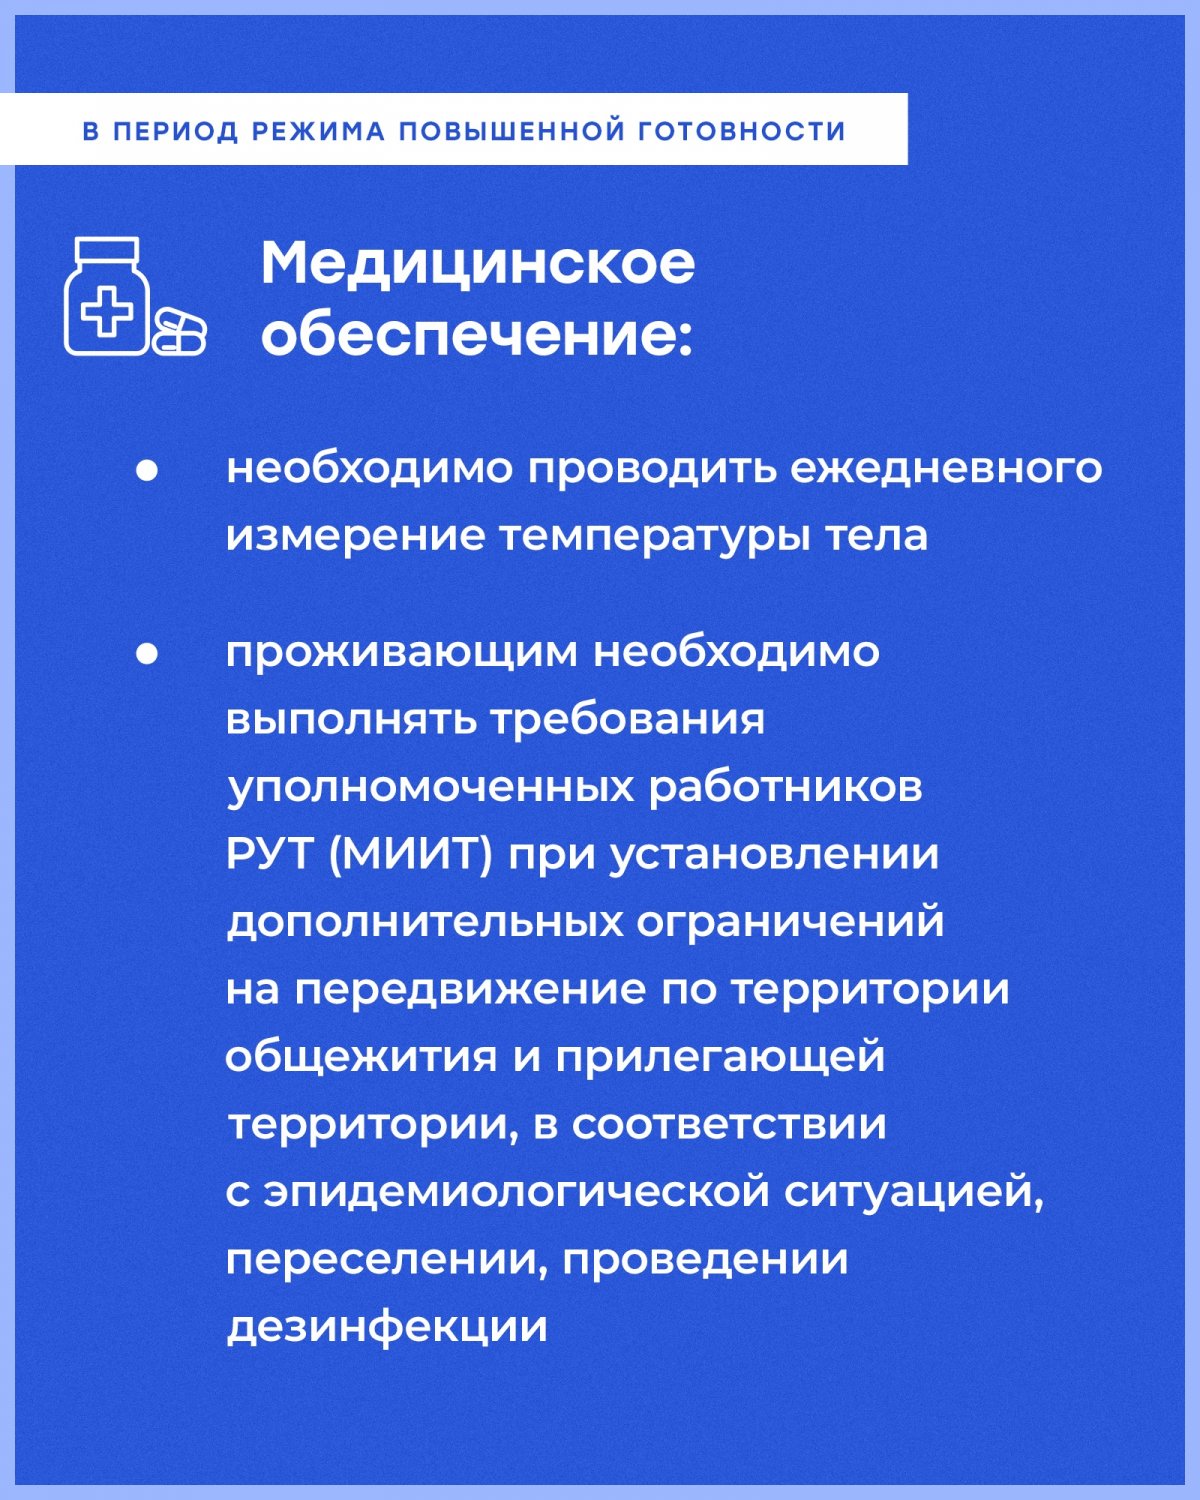 Для предупреждения распространения коронавирусной инфекции (covid-19) в общежитиях Российского университета транспорта вводится временный порядок проживания